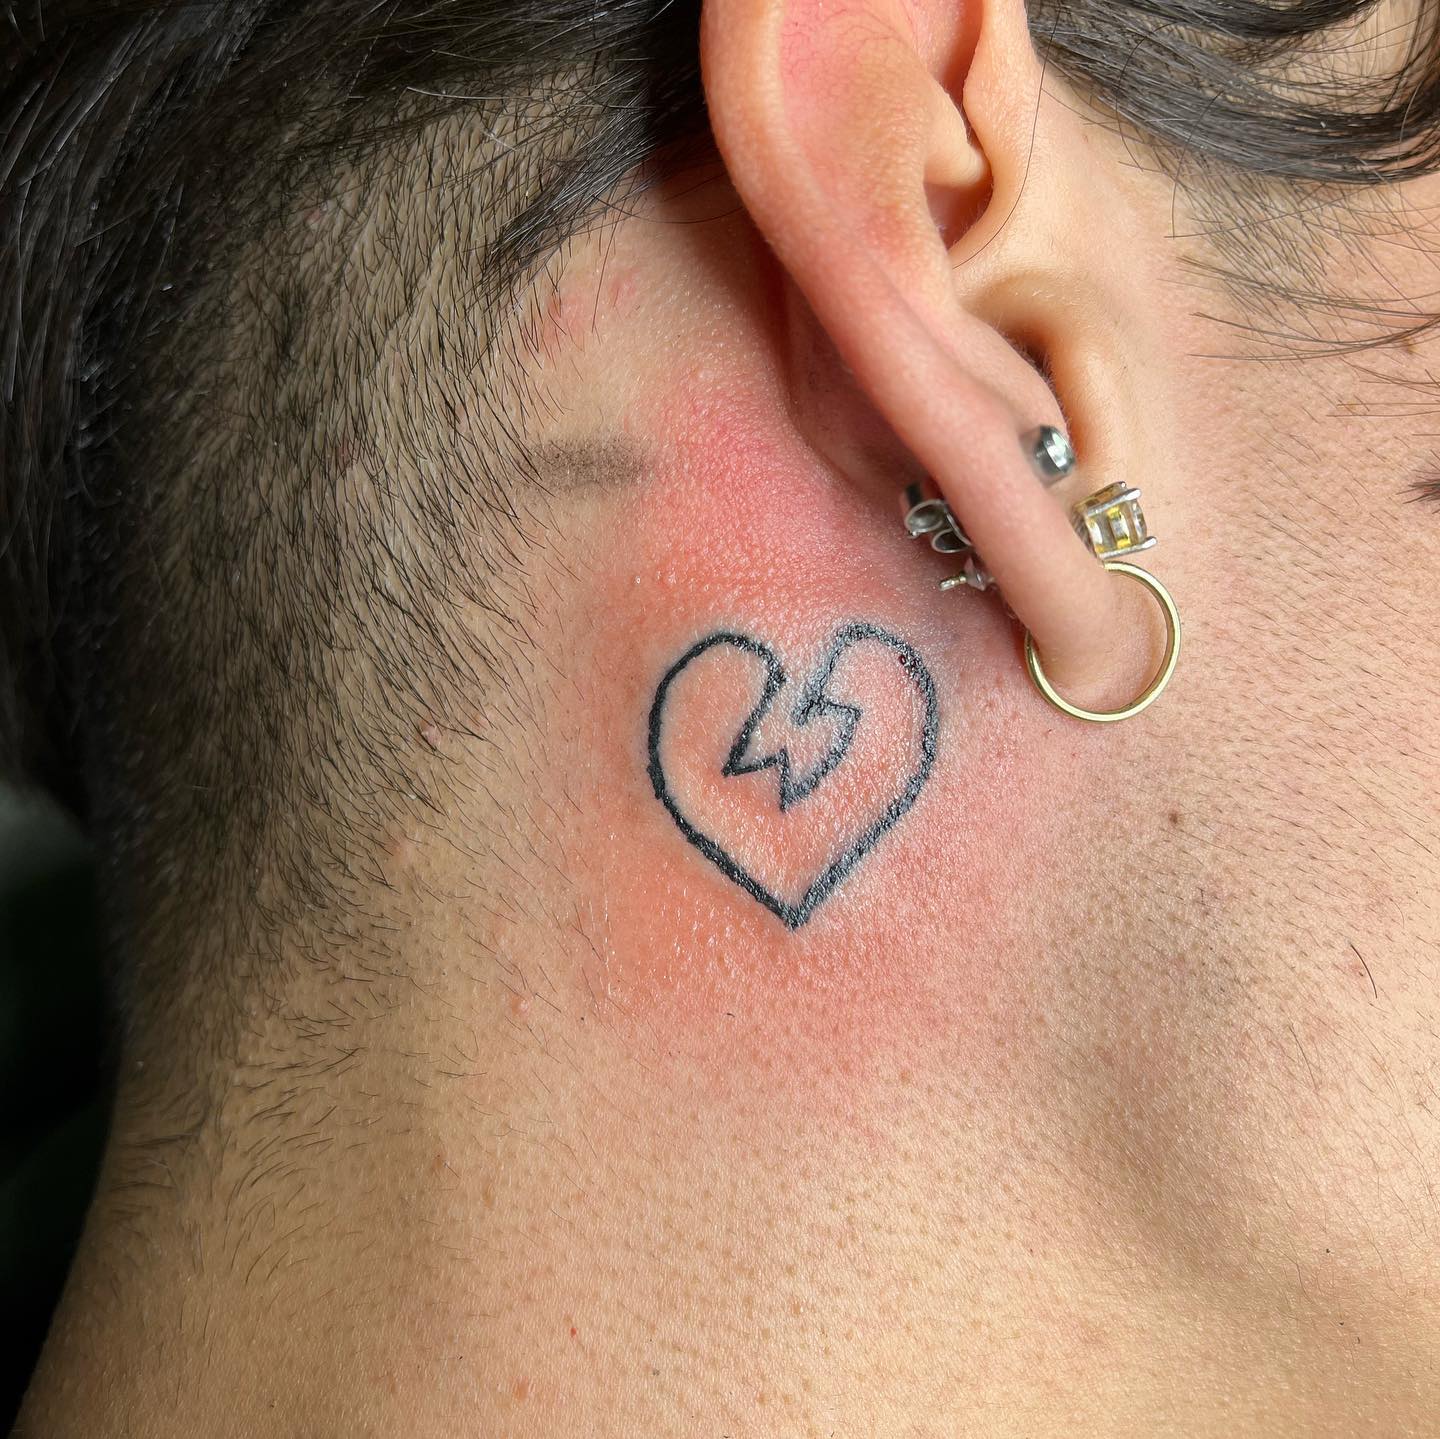 Tatuaje de corazón roto detrás de la oreja.